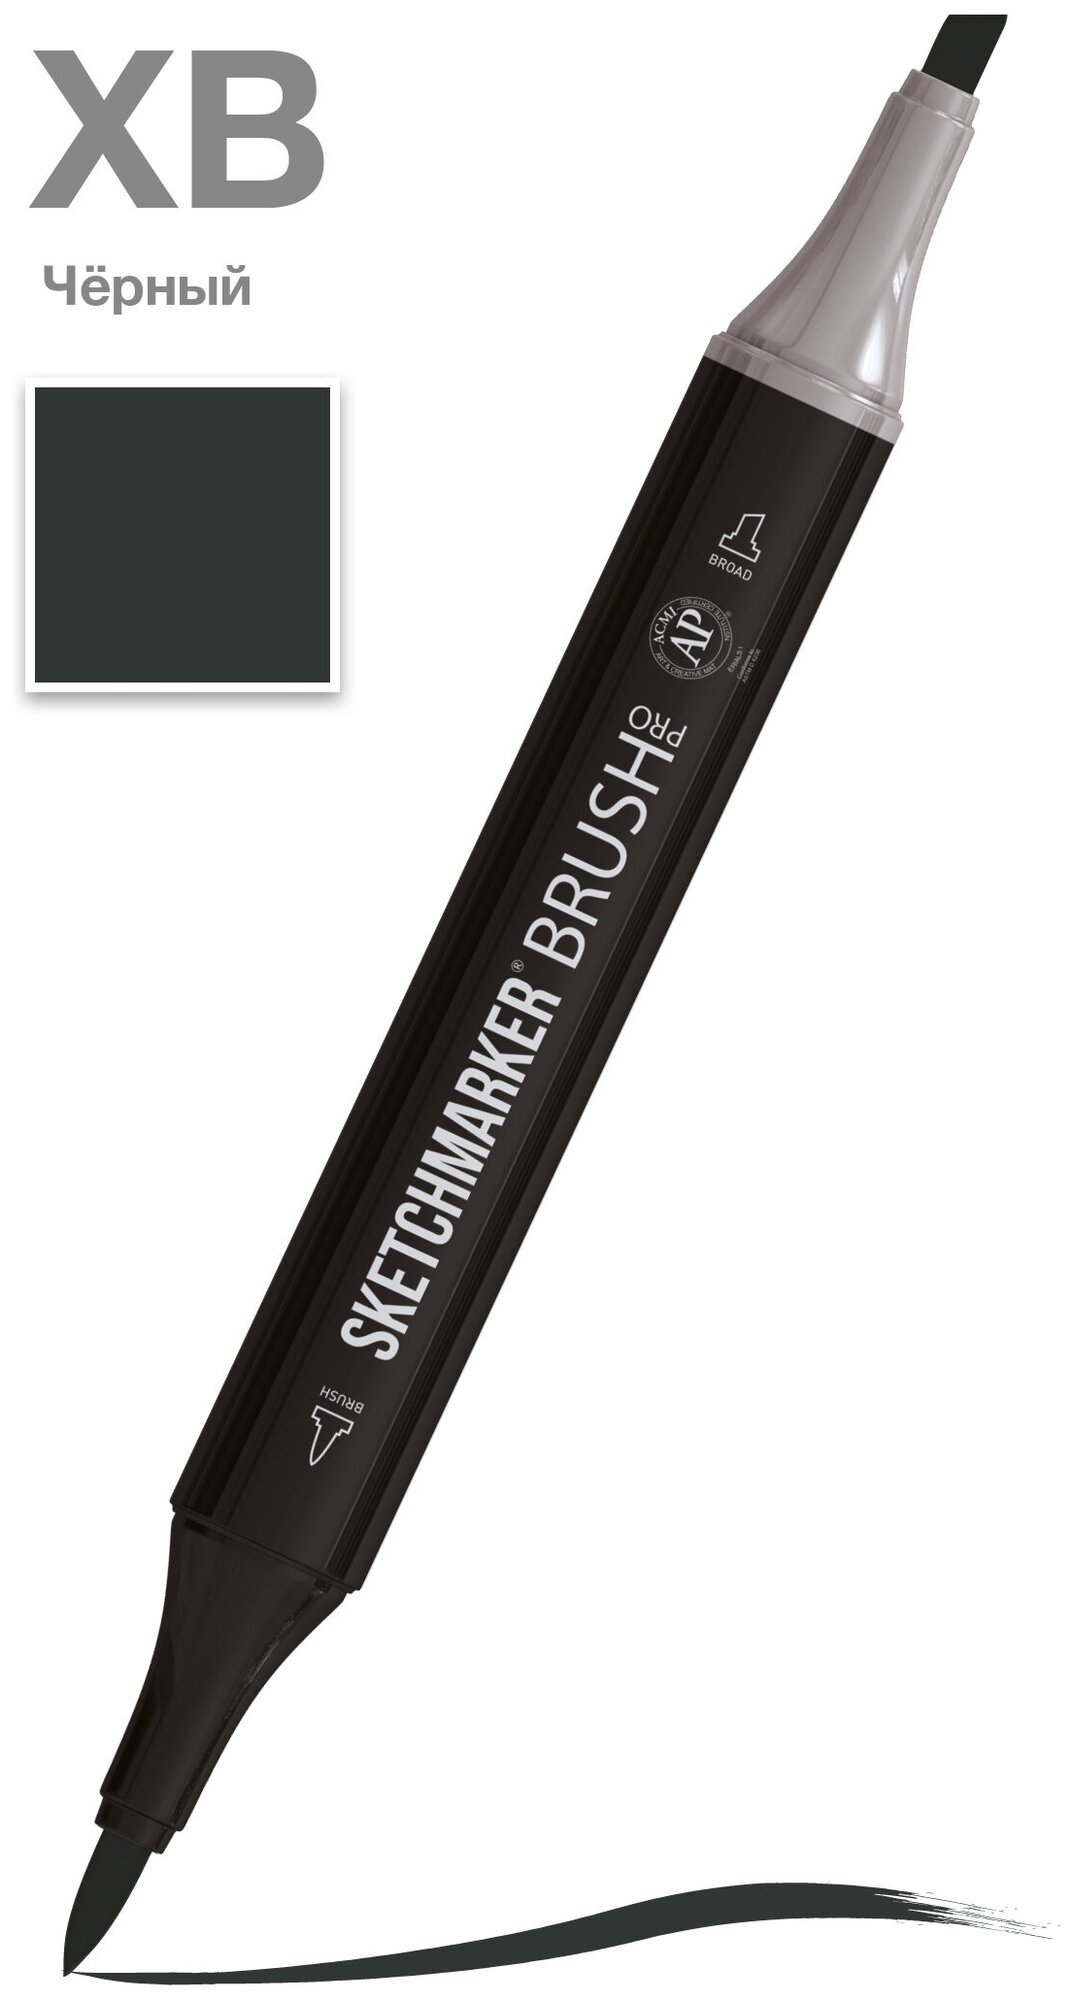 Маркер Sketchmarker Brush двухсторонний на спирт. основе цв. XB Черный